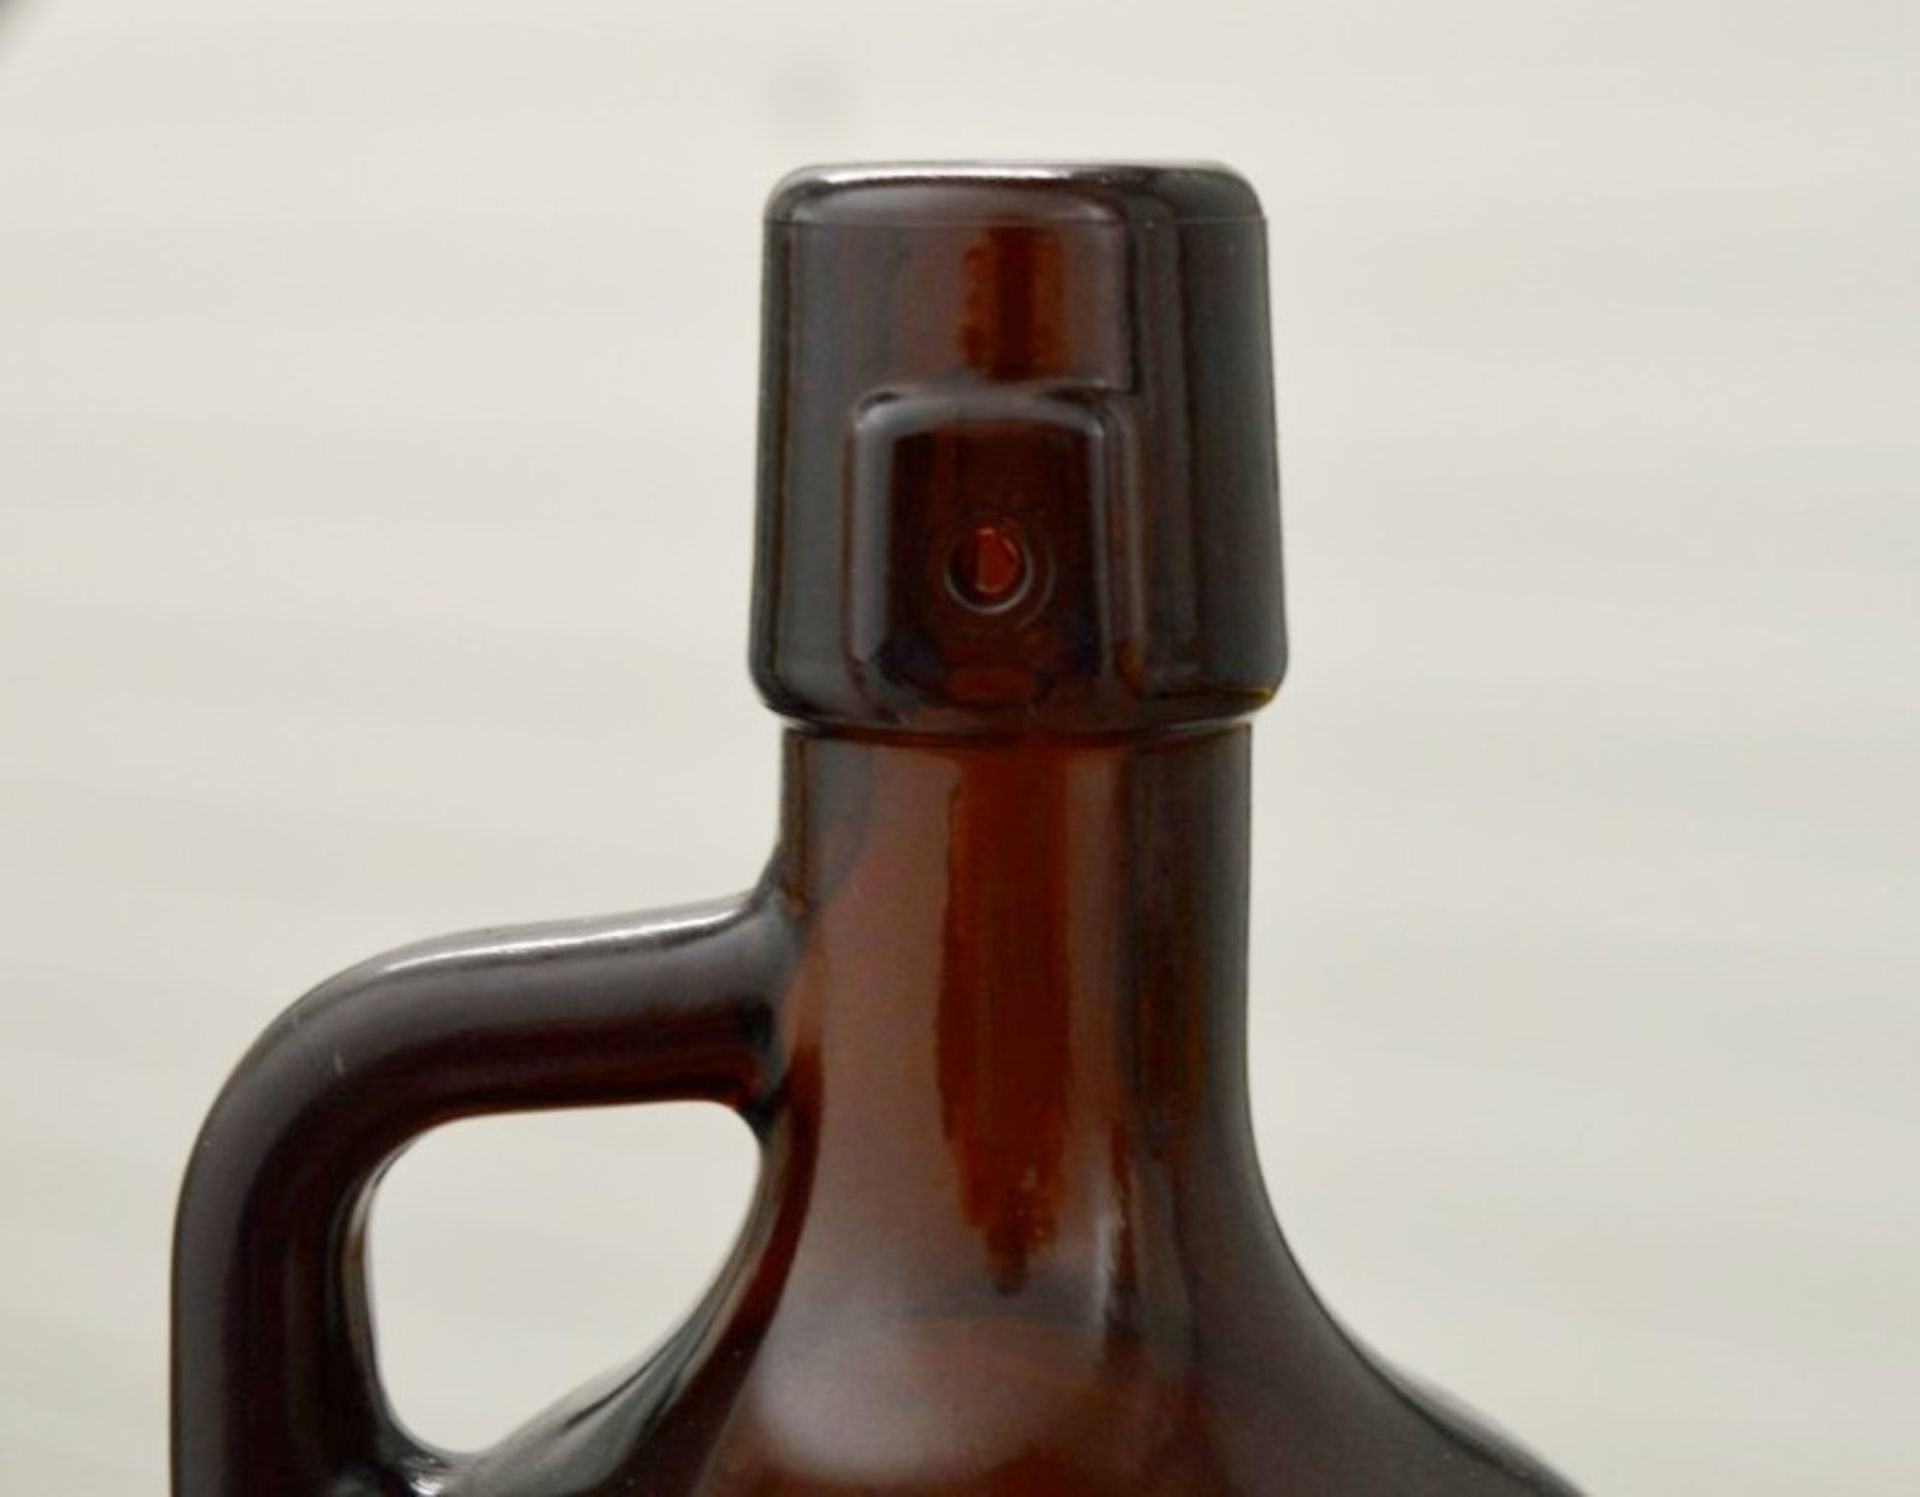 100 x Beer Growlers W/ Glass Handle (Jug Style Brown Bottles) - 1 Litre Capacity - New / Unused - Image 3 of 3